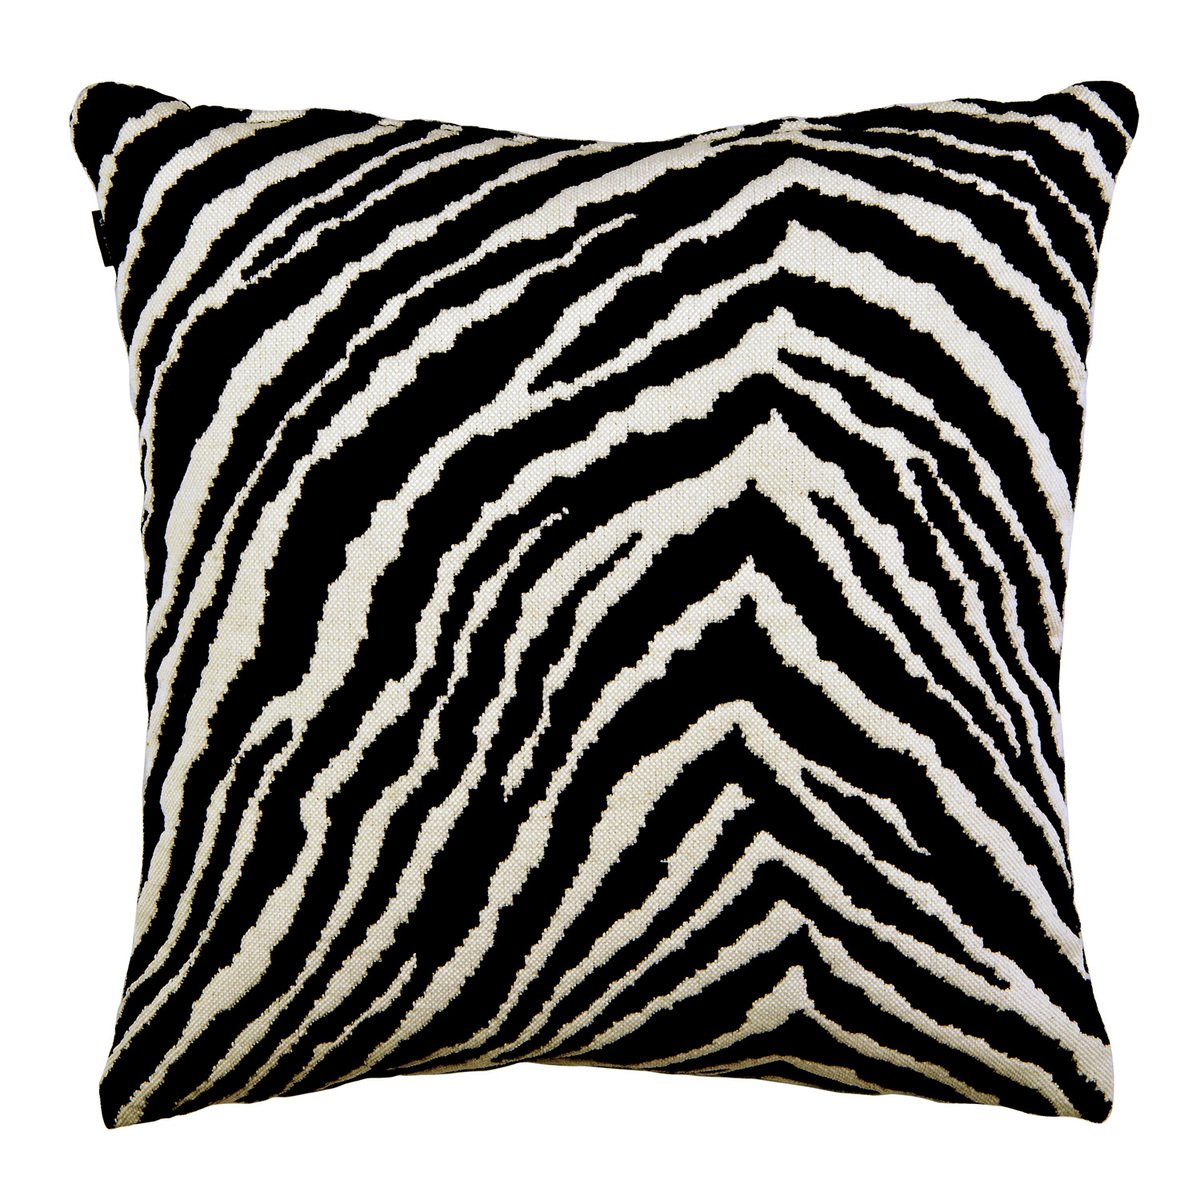 Artek Zebra tyynynpäällinen, 40 x 40 cm